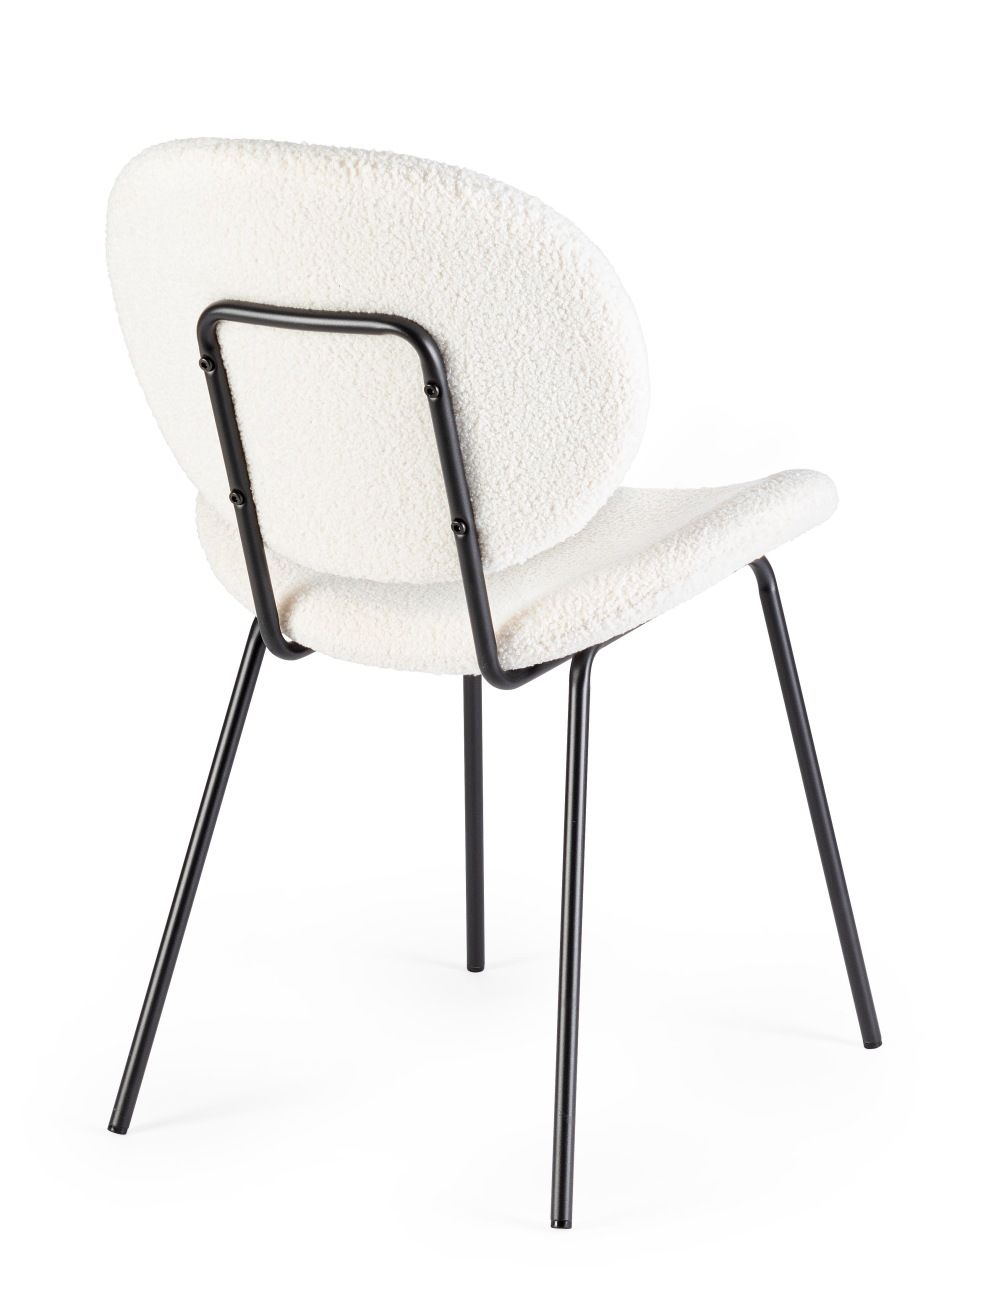 Der Esszimmerstuhl Maddie überzeugt mit seinem modernen Stil. Gefertigt wurde er aus Boucle-Stoff, welcher einen weißen Farbton besitzt. Das Gestell ist aus Metall und hat eine schwarze Farbe. Der Stuhl besitzt eine Sitzhöhe von 46 cm.